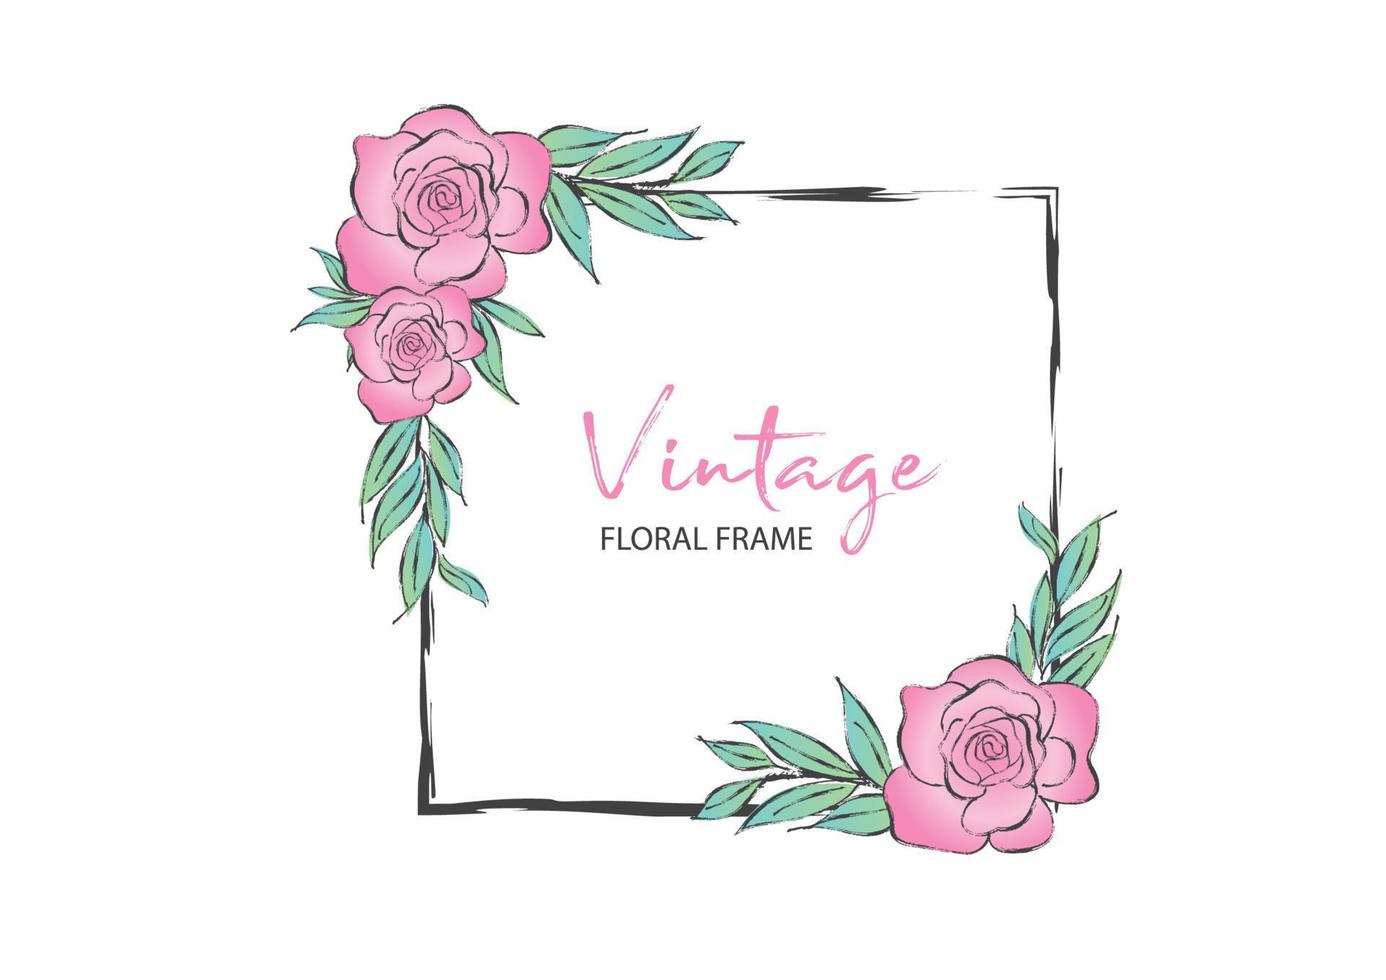 vintage vierkante frame met roze roos vectorillustratie kan worden gebruikt voor uitnodiging, bruiloft, wenskaarten, bloemen frame, roos schilderij vector